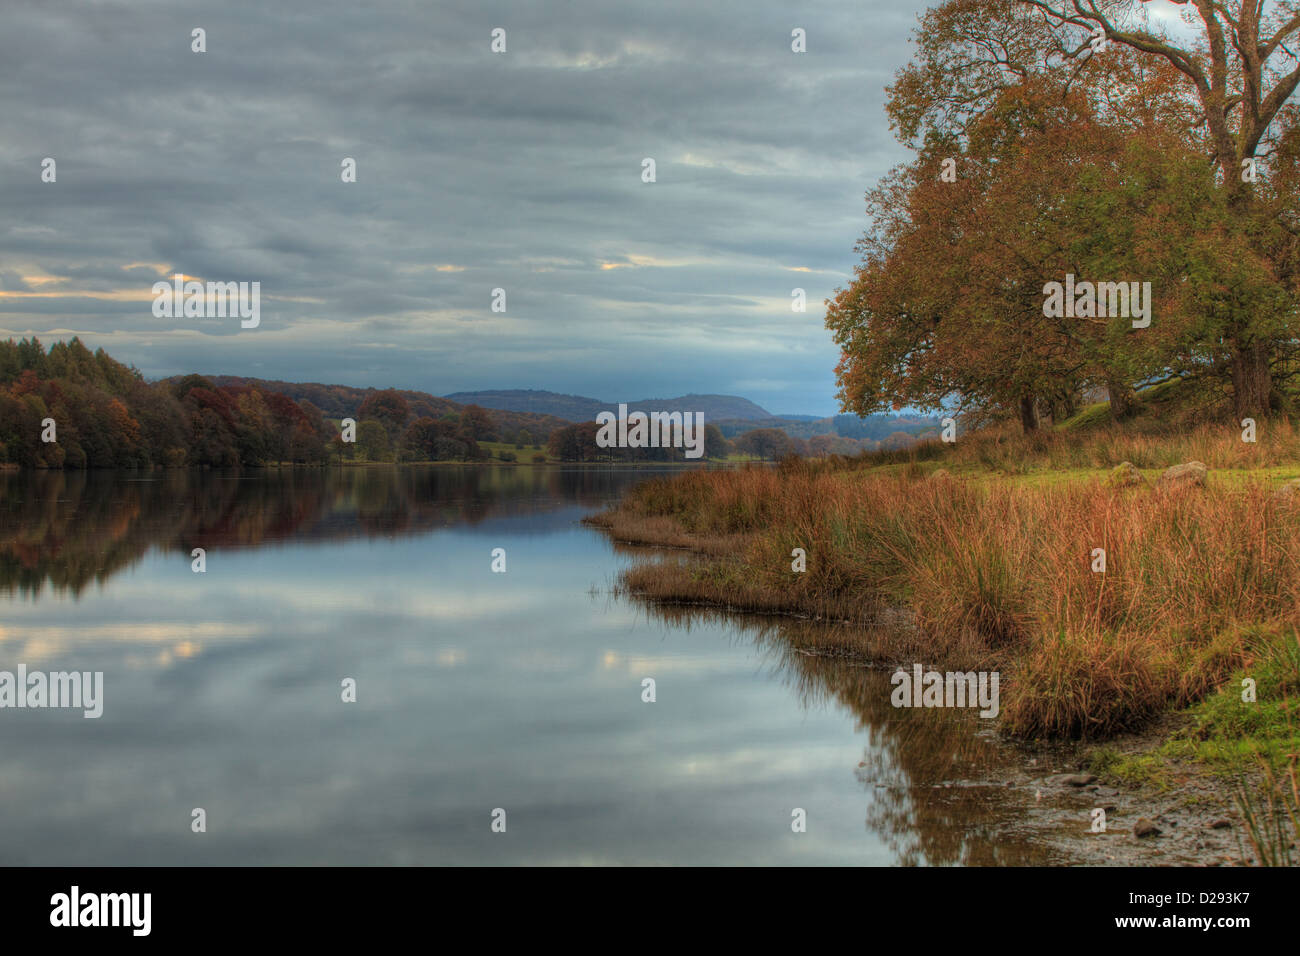 Vue sur le lac à l'aube de l'automne. Esthwaite Water, Lake District, Cumbria. L'Angleterre. Octobre. Banque D'Images